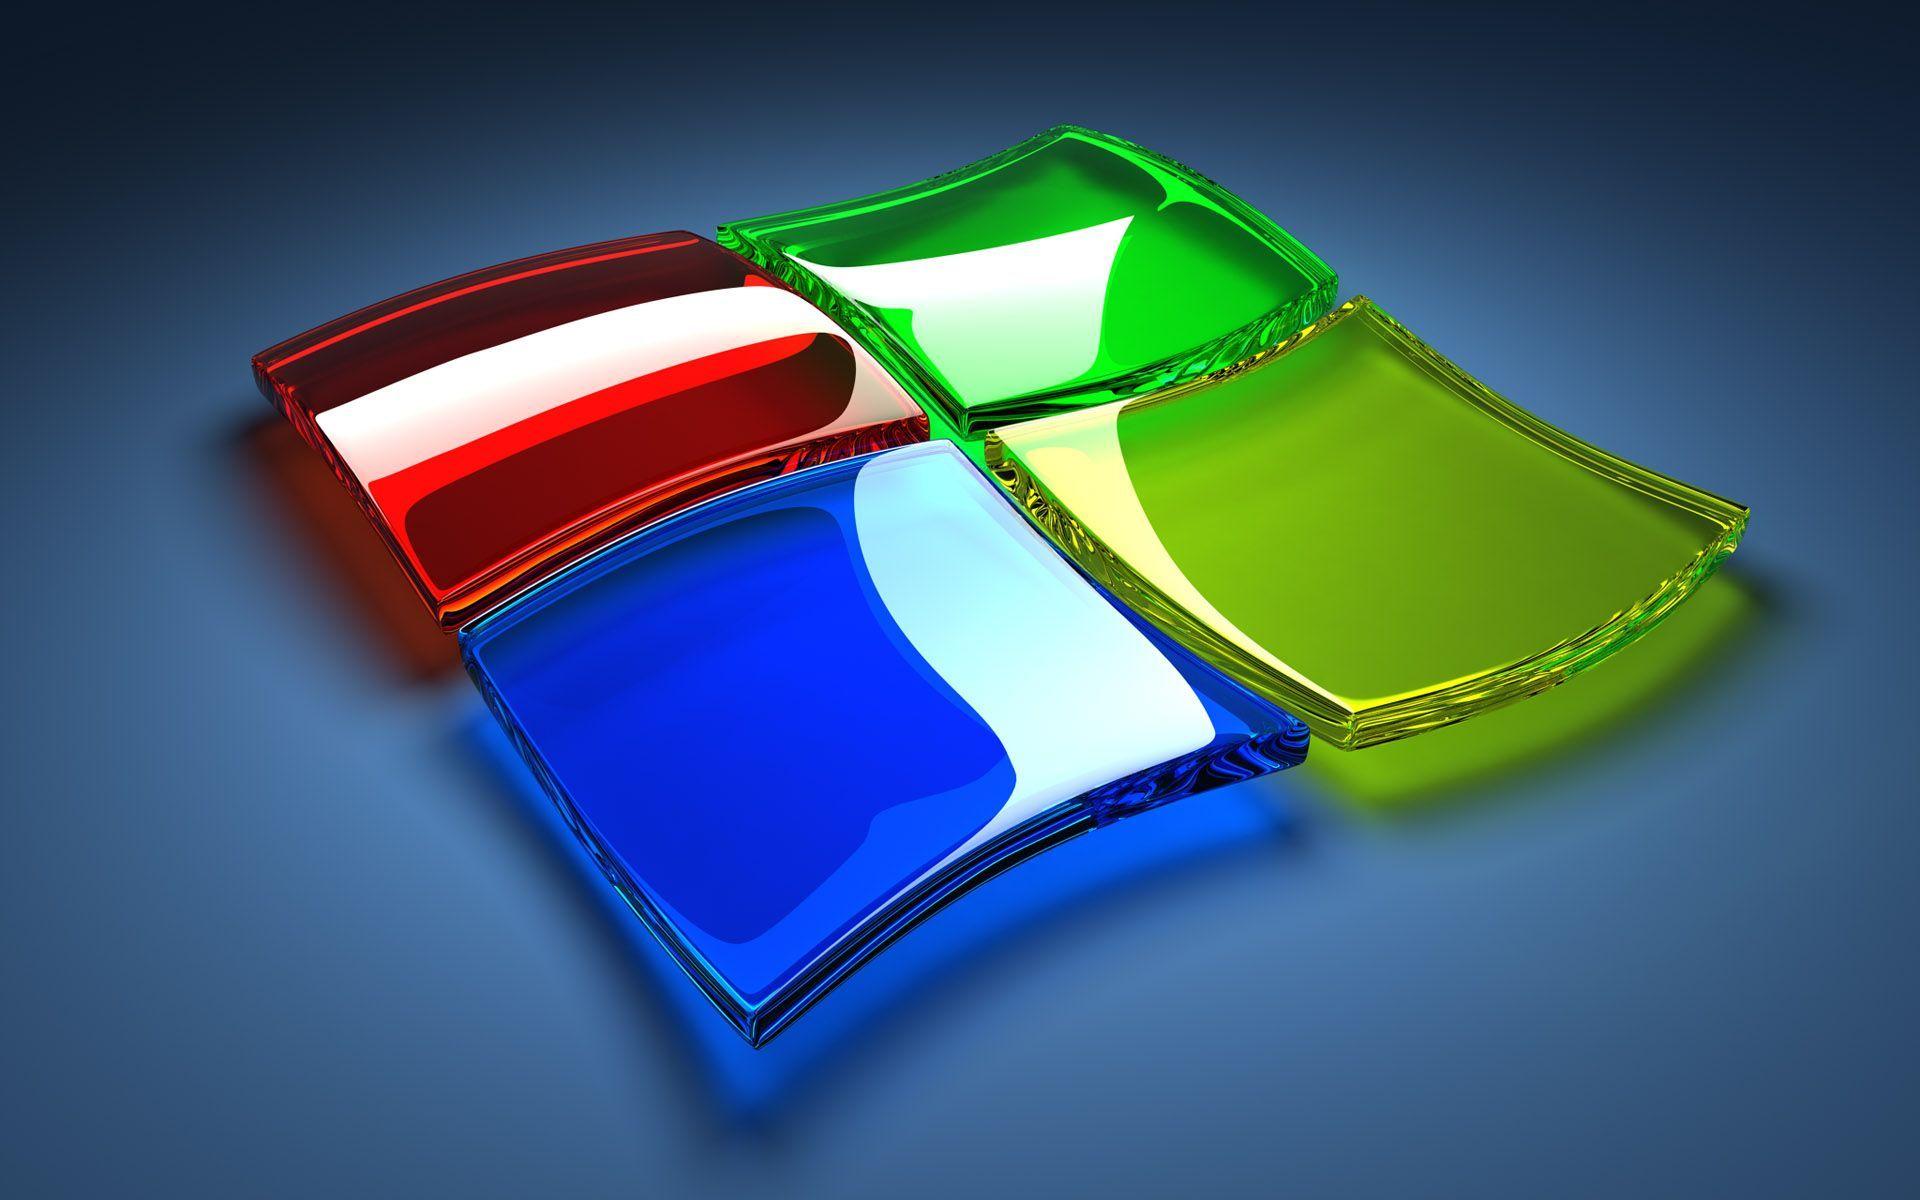 Windows 7 3D HD Widescreen Desktop Background 2400x1800px high